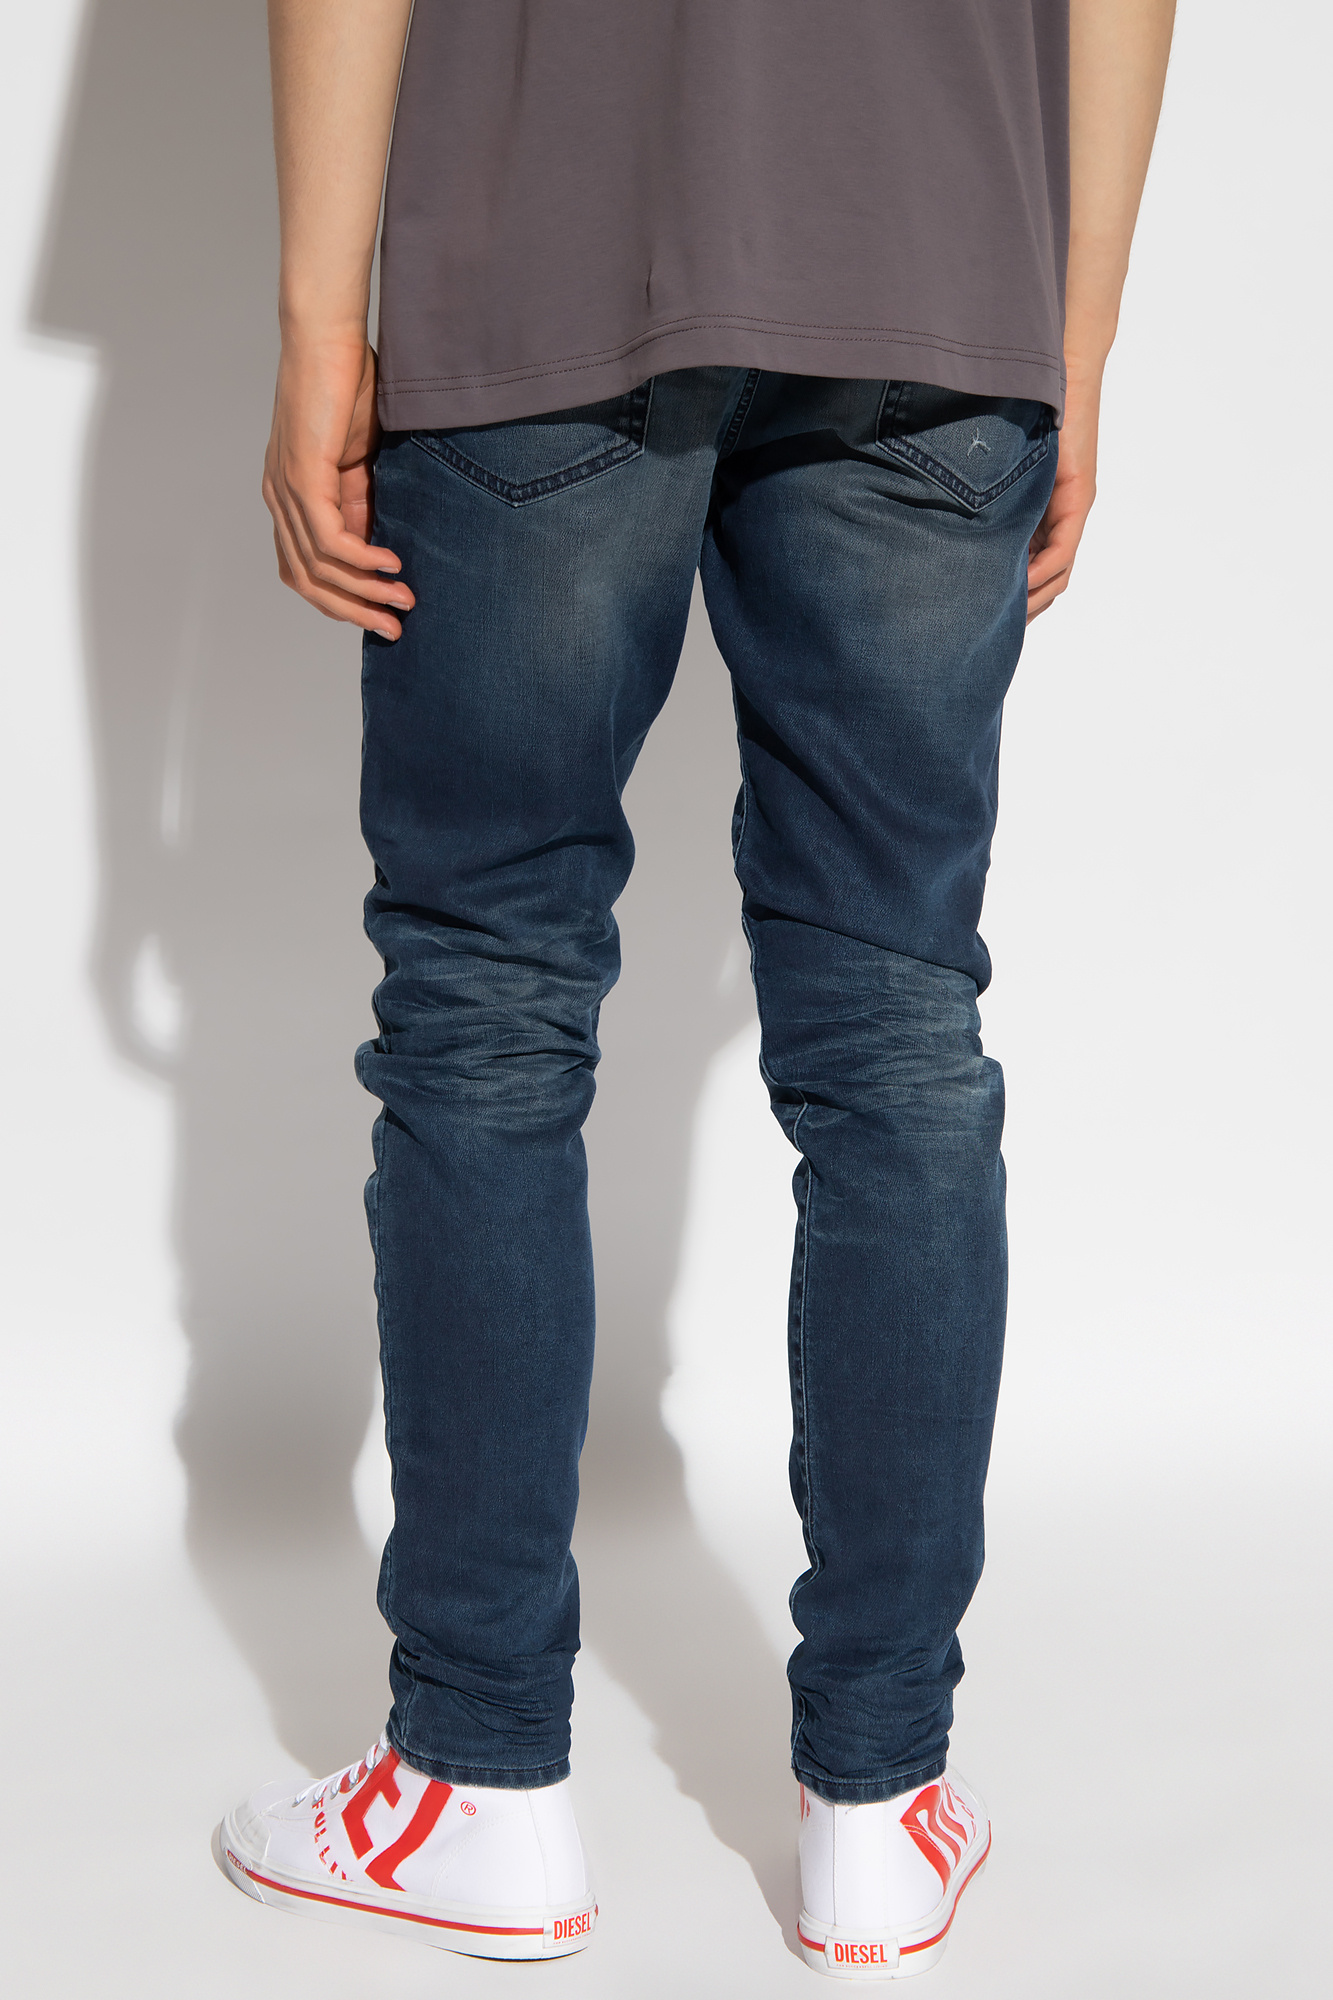 Diesel ‘D-KROOLEY JOGG’ jeans | Men's Clothing | Vitkac